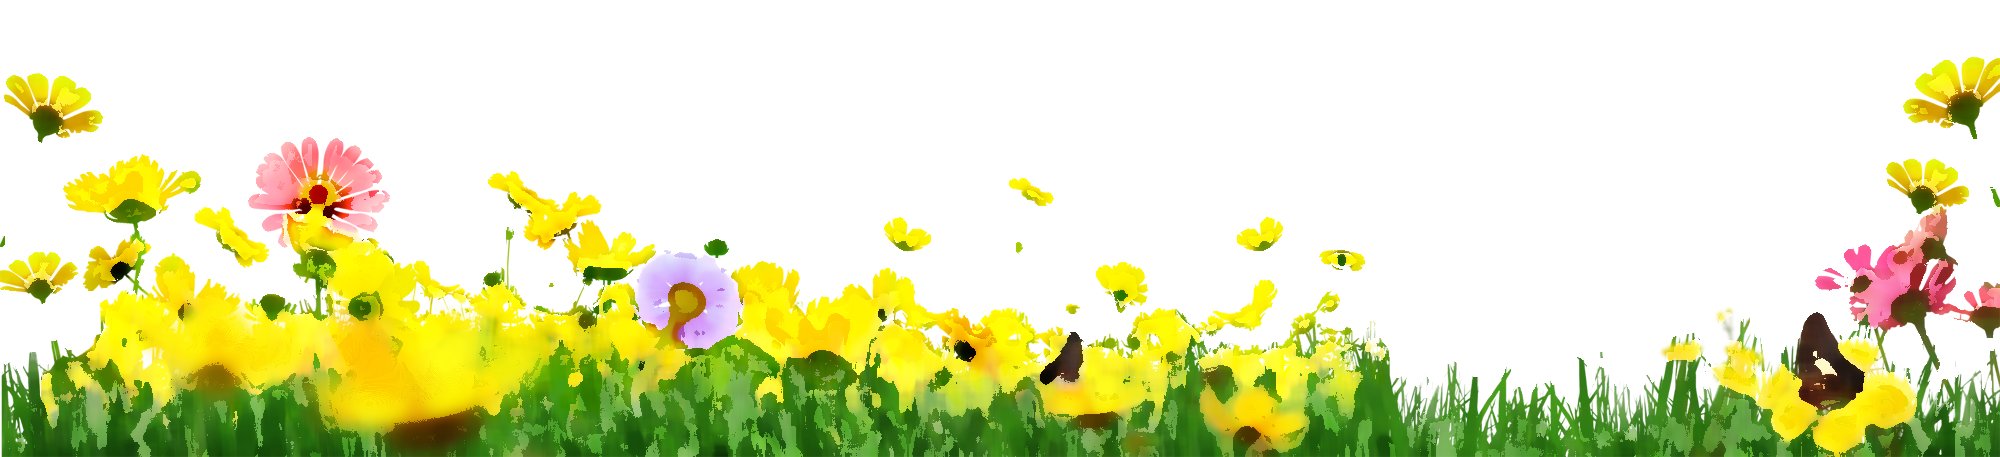 黄色い花のイラスト フリー素材 No 187 花畑 草むら 蝶